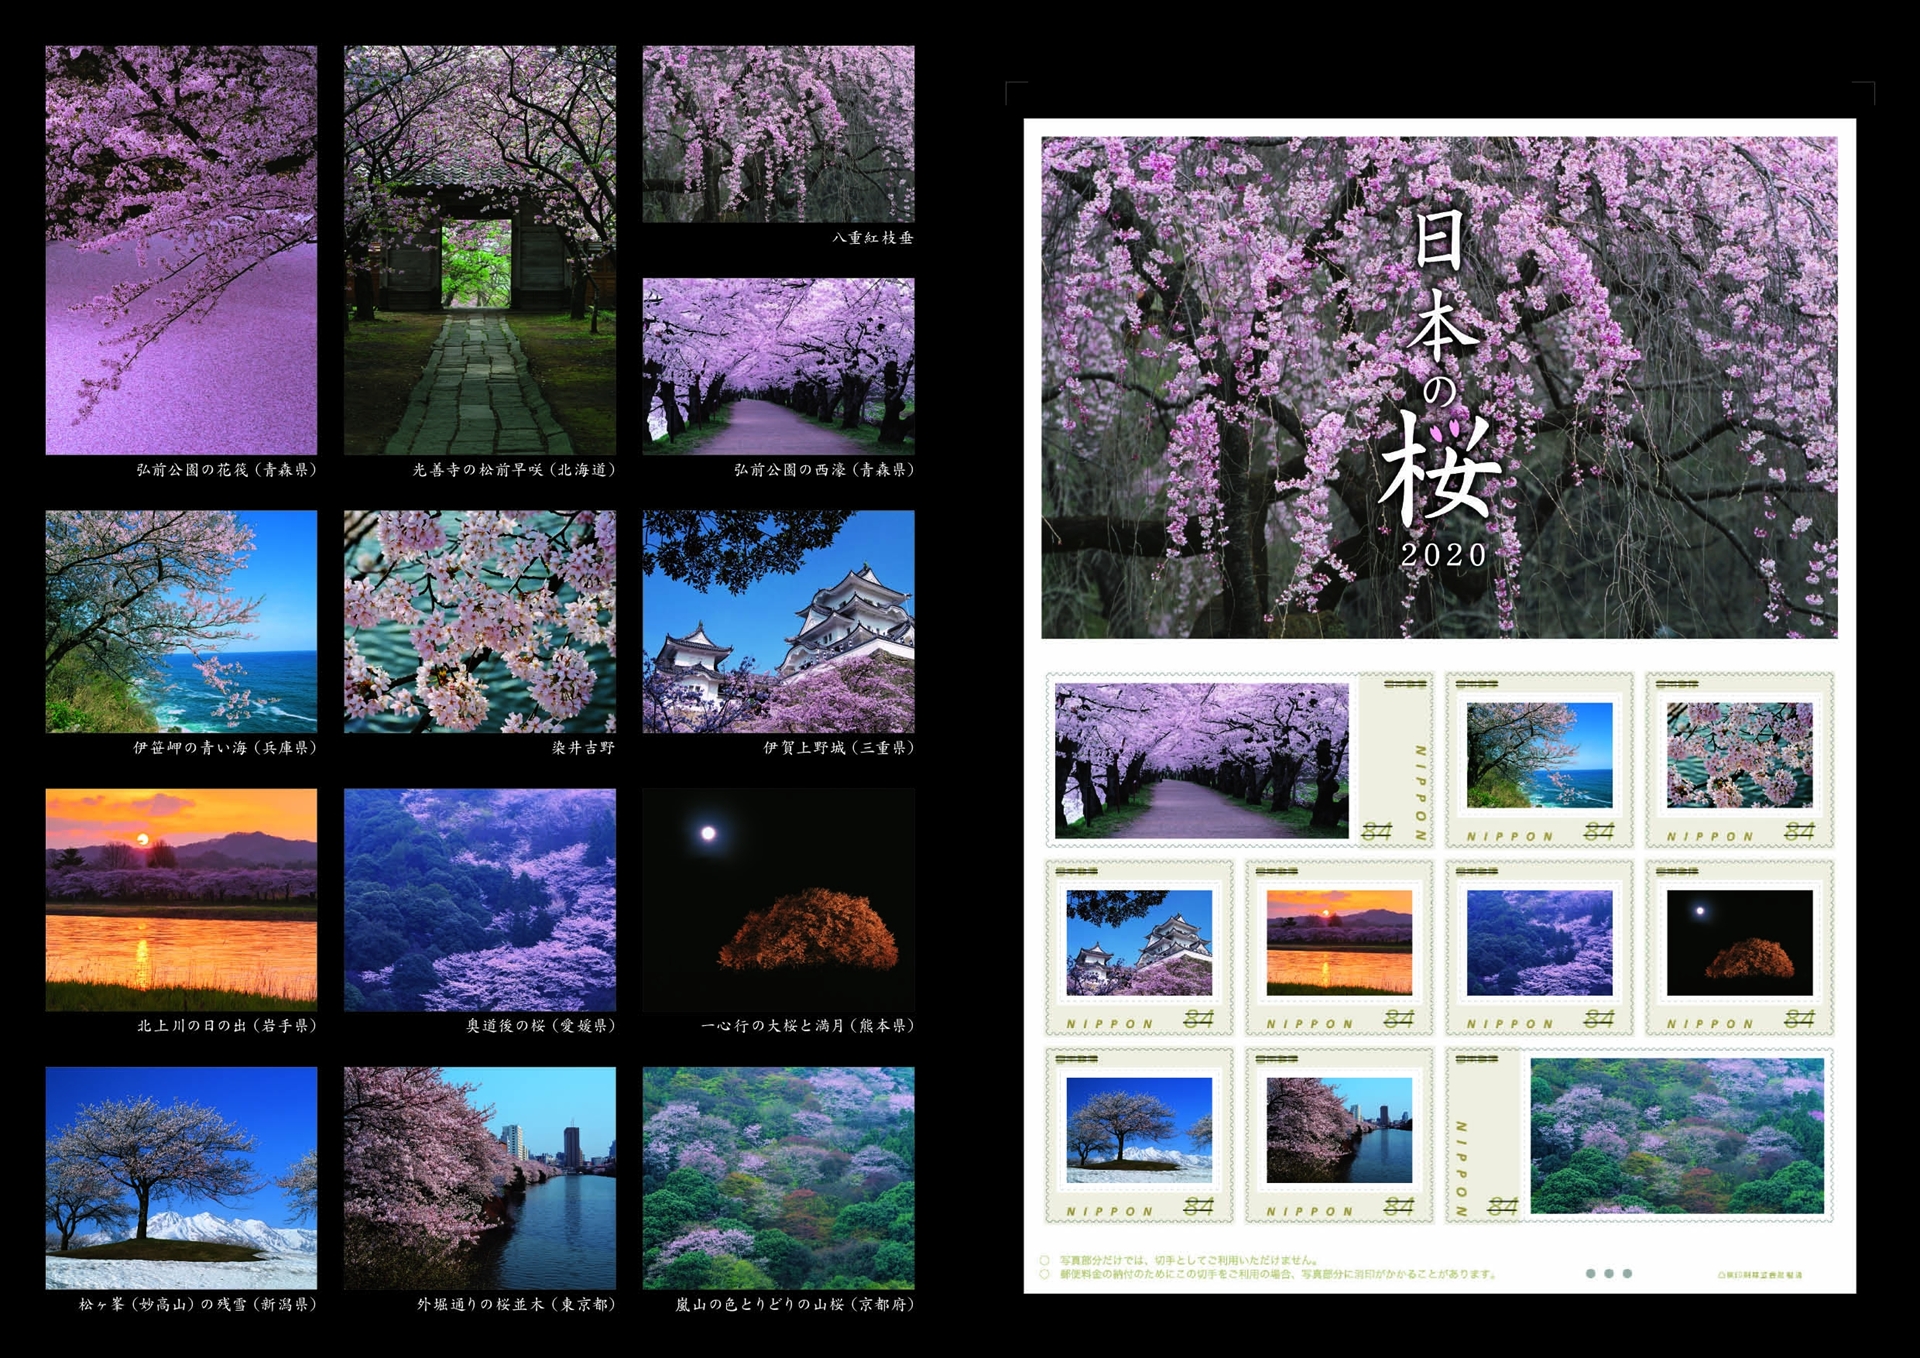 日本郵便 日本各地の桜を題材にしたフレーム切手 日本の桜 2020